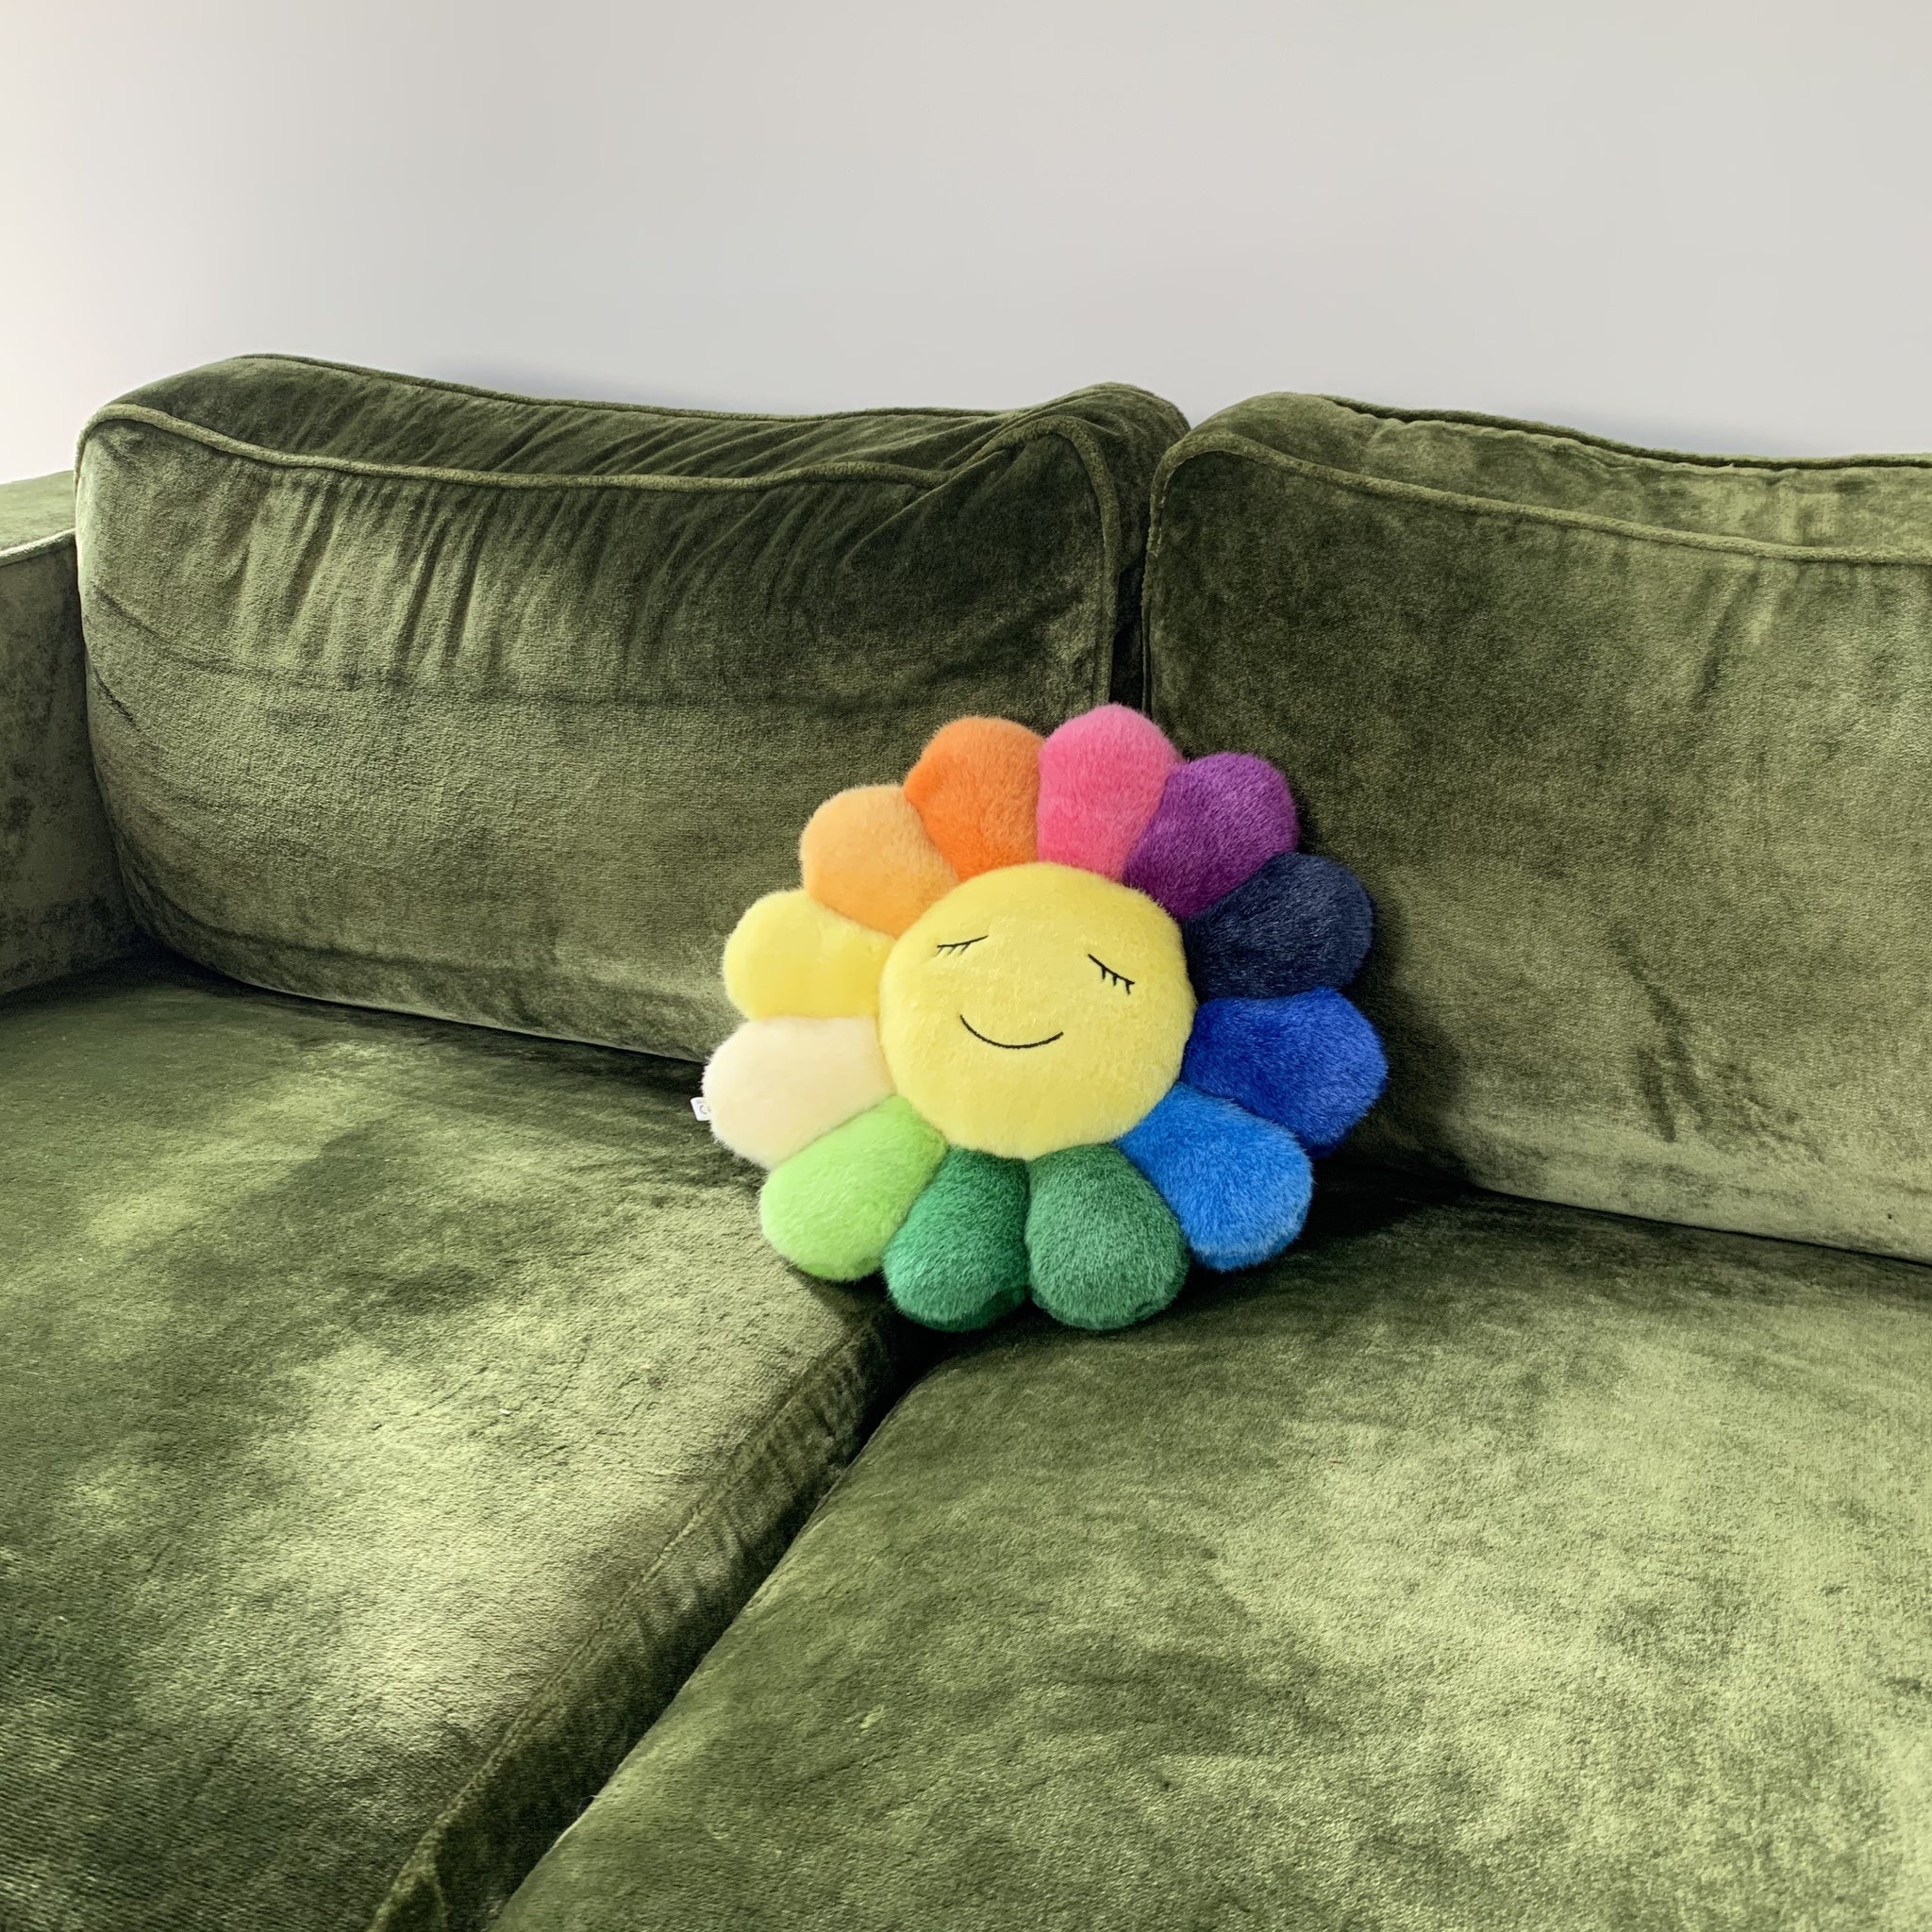 Takashi Murakami - Flower cushion (rainbow) - Plush